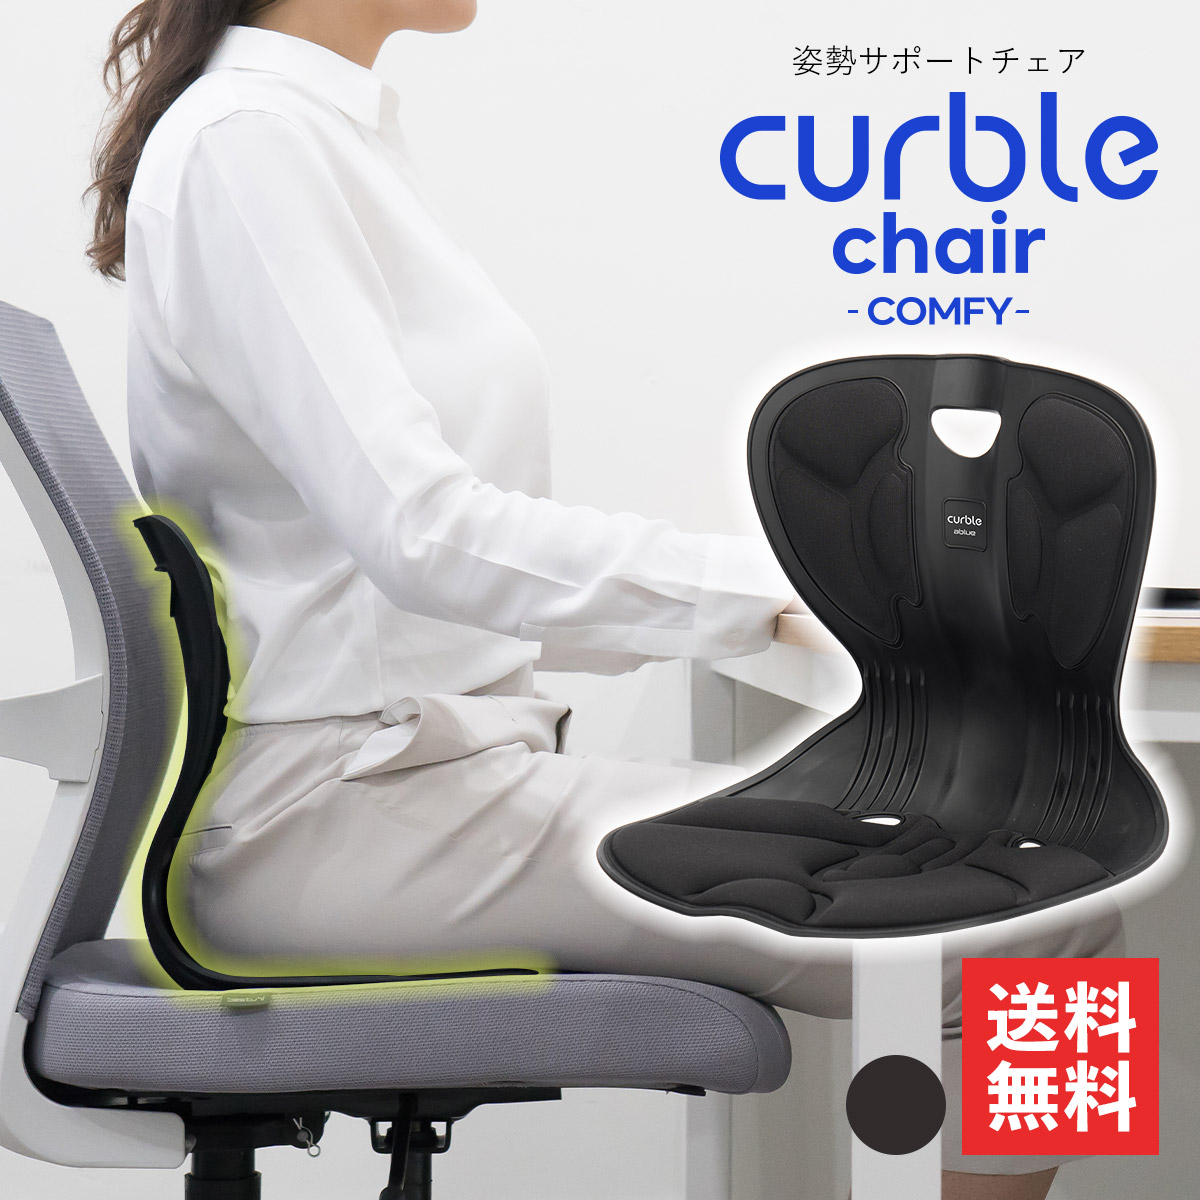 カーブルチェア curble ablue - 座椅子